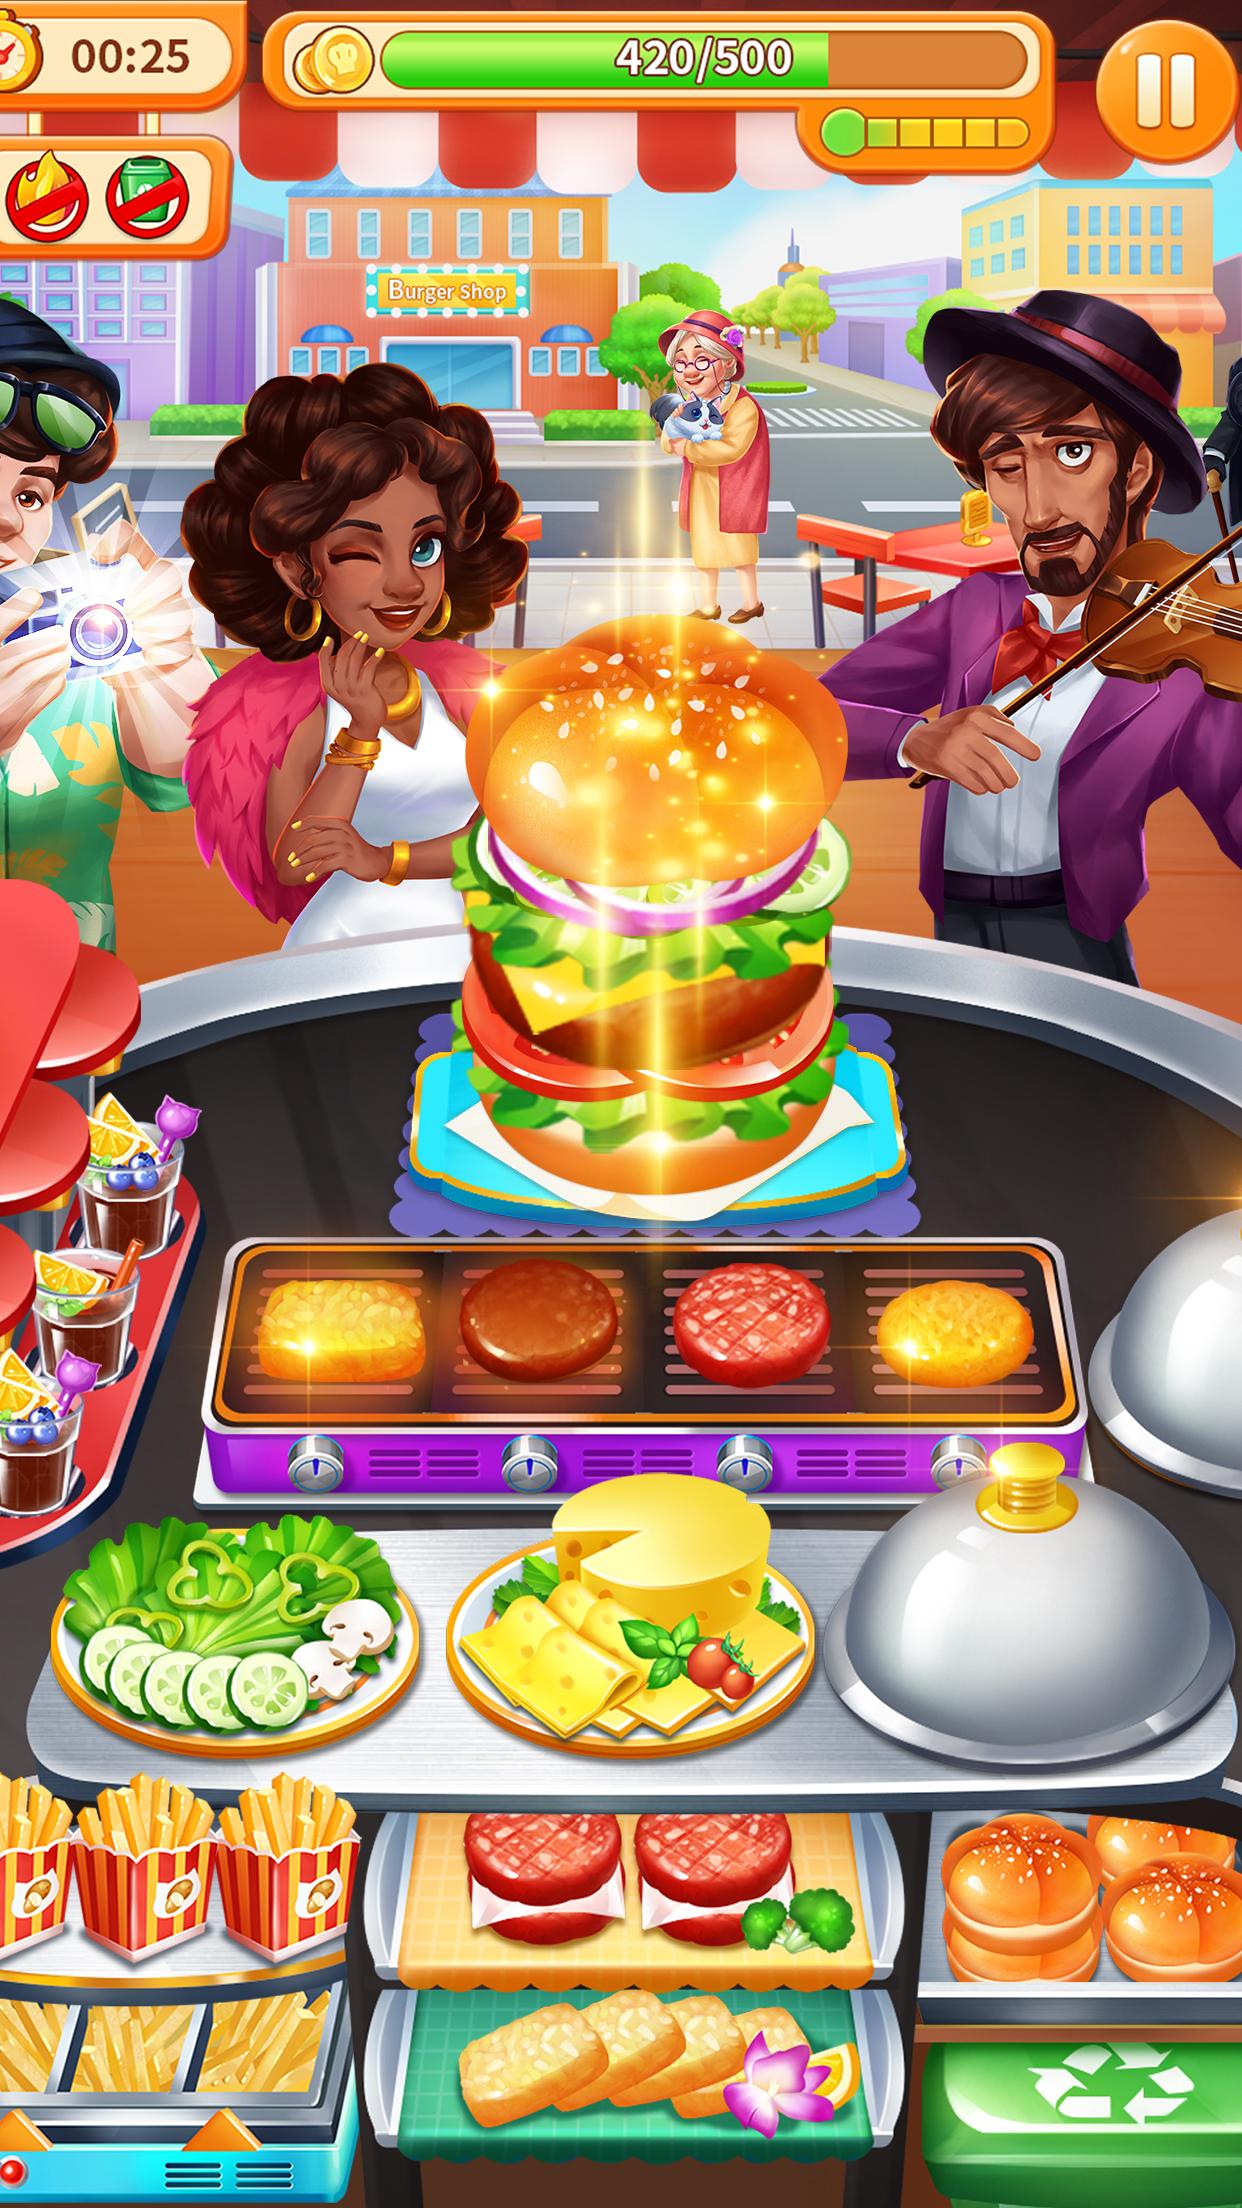 Food игры. Готовим бунгергеры для ДОУ игра. Флеш игра 3d где нужно готовить бургеры. Игра на телефон где надо было готовить гамбургеры.